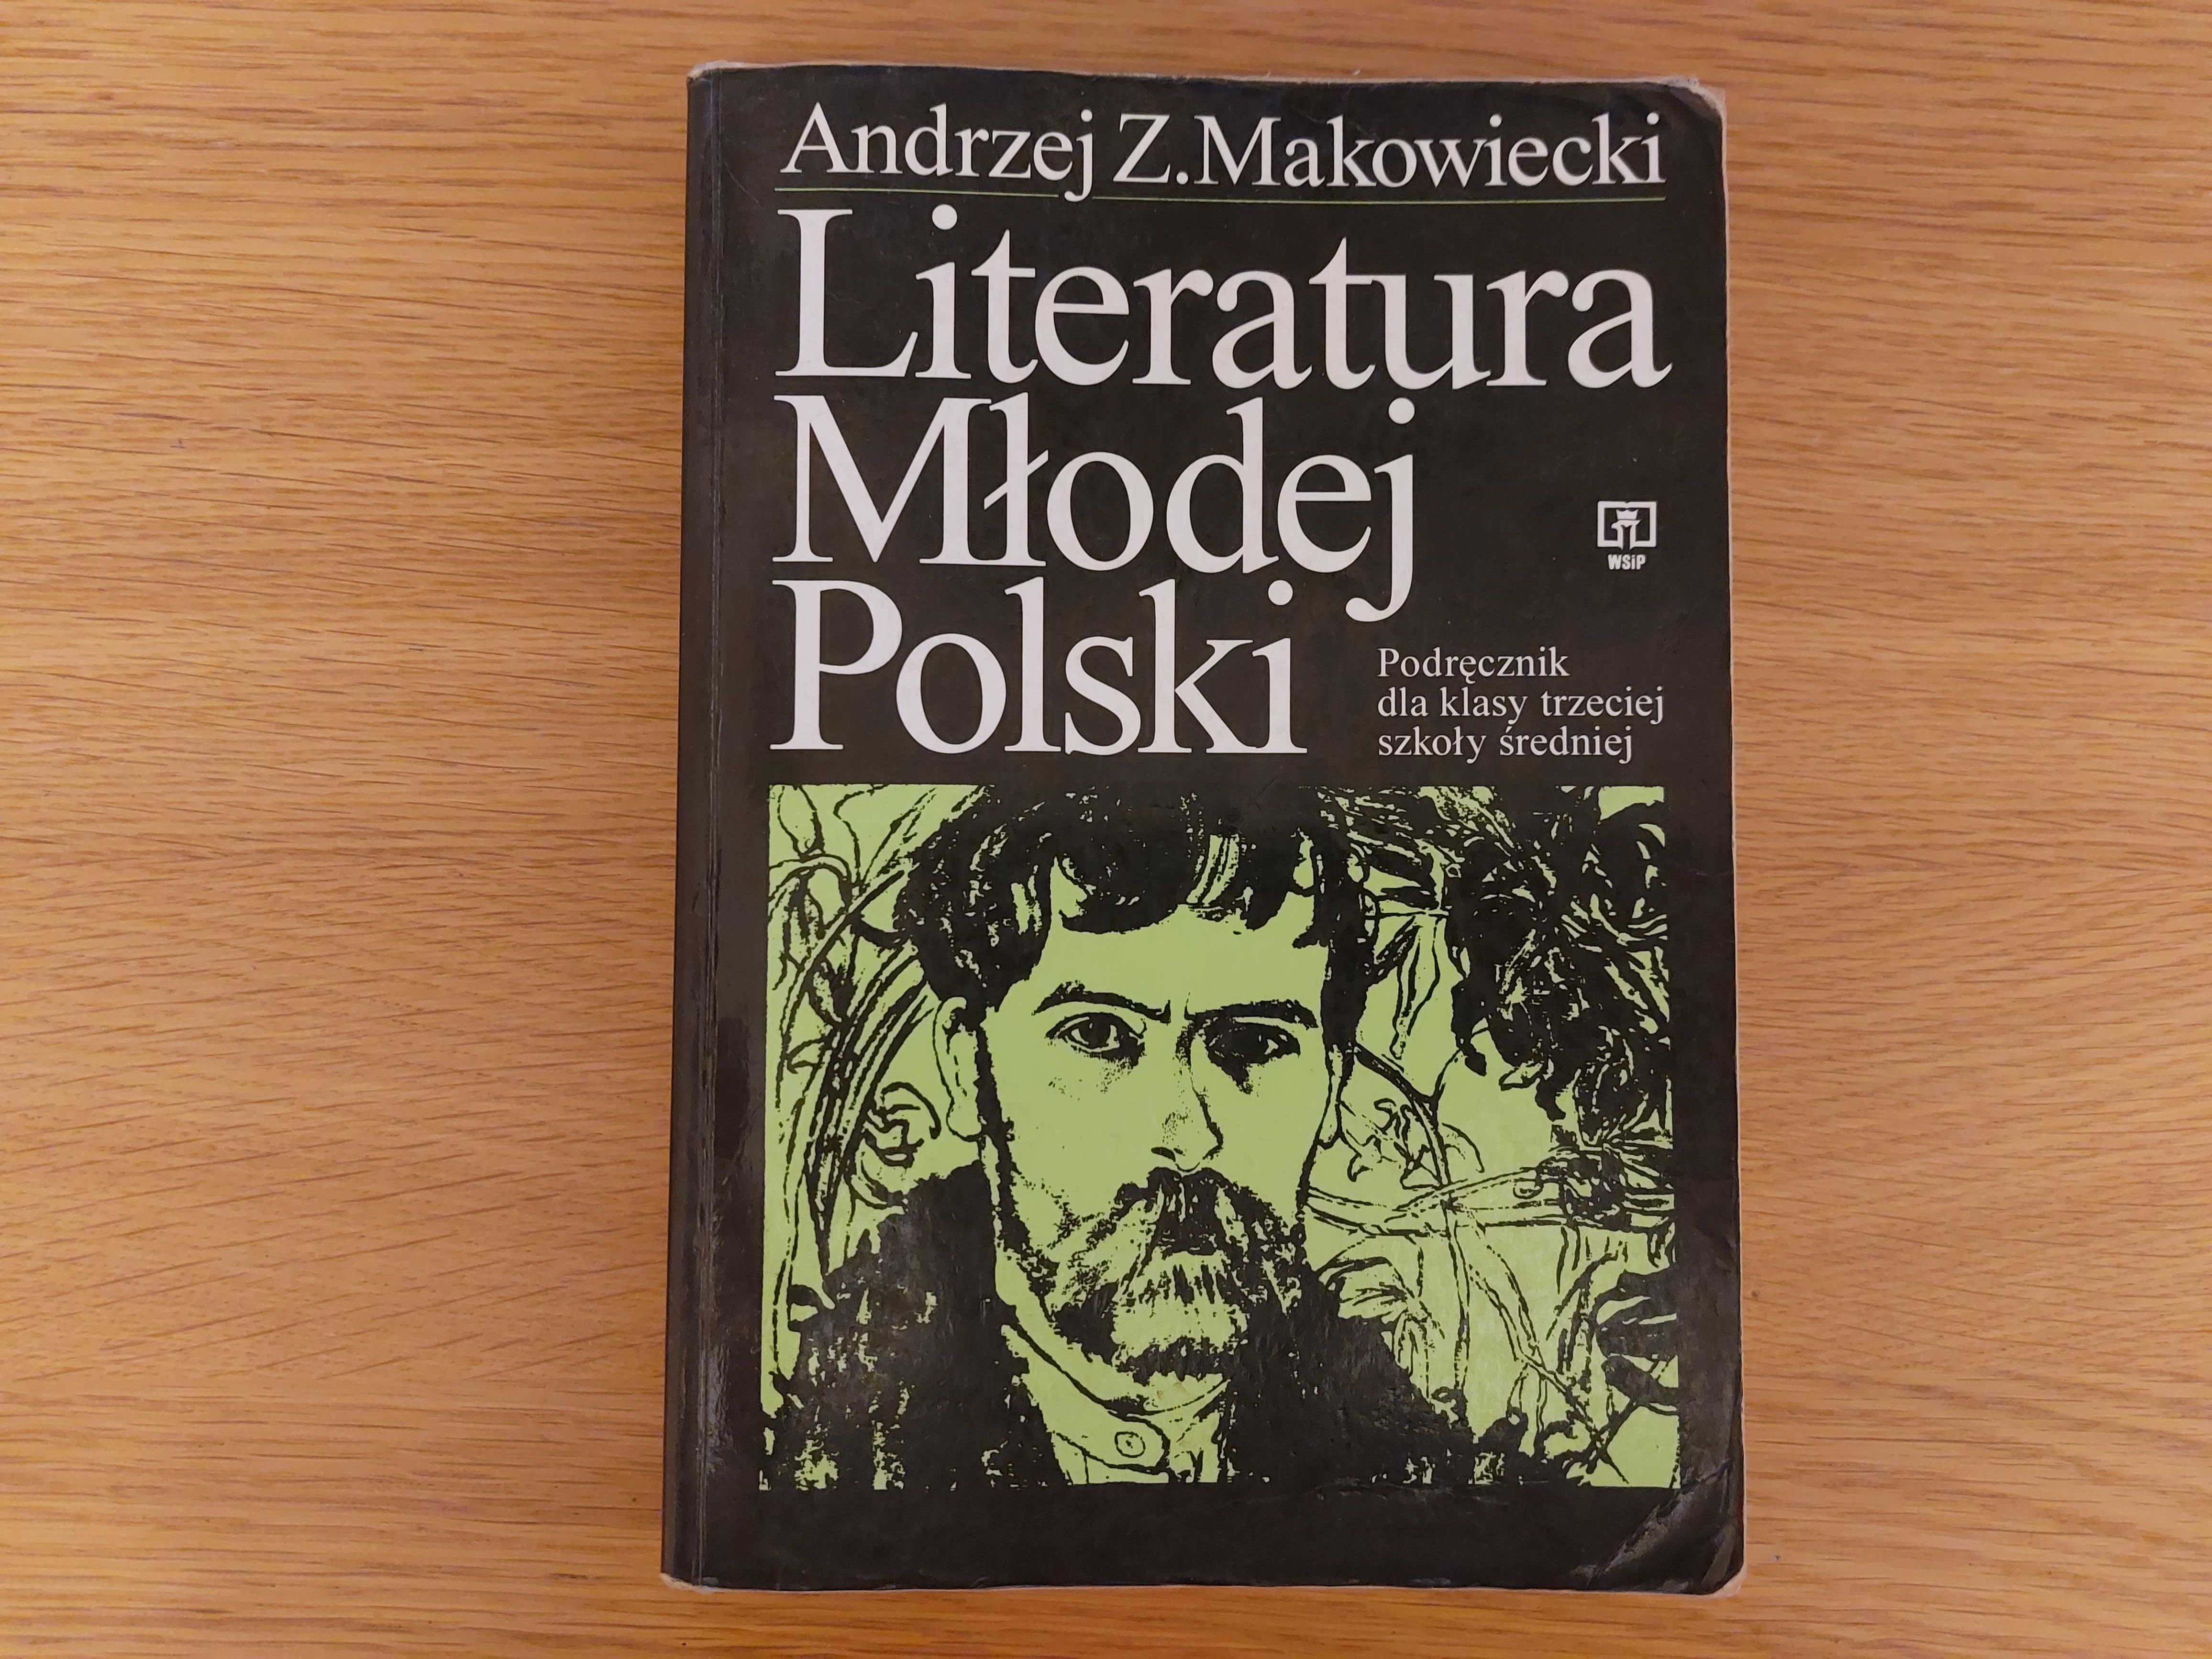 Literatura Młodej Polski.  Andrzej Z. Makowiecki